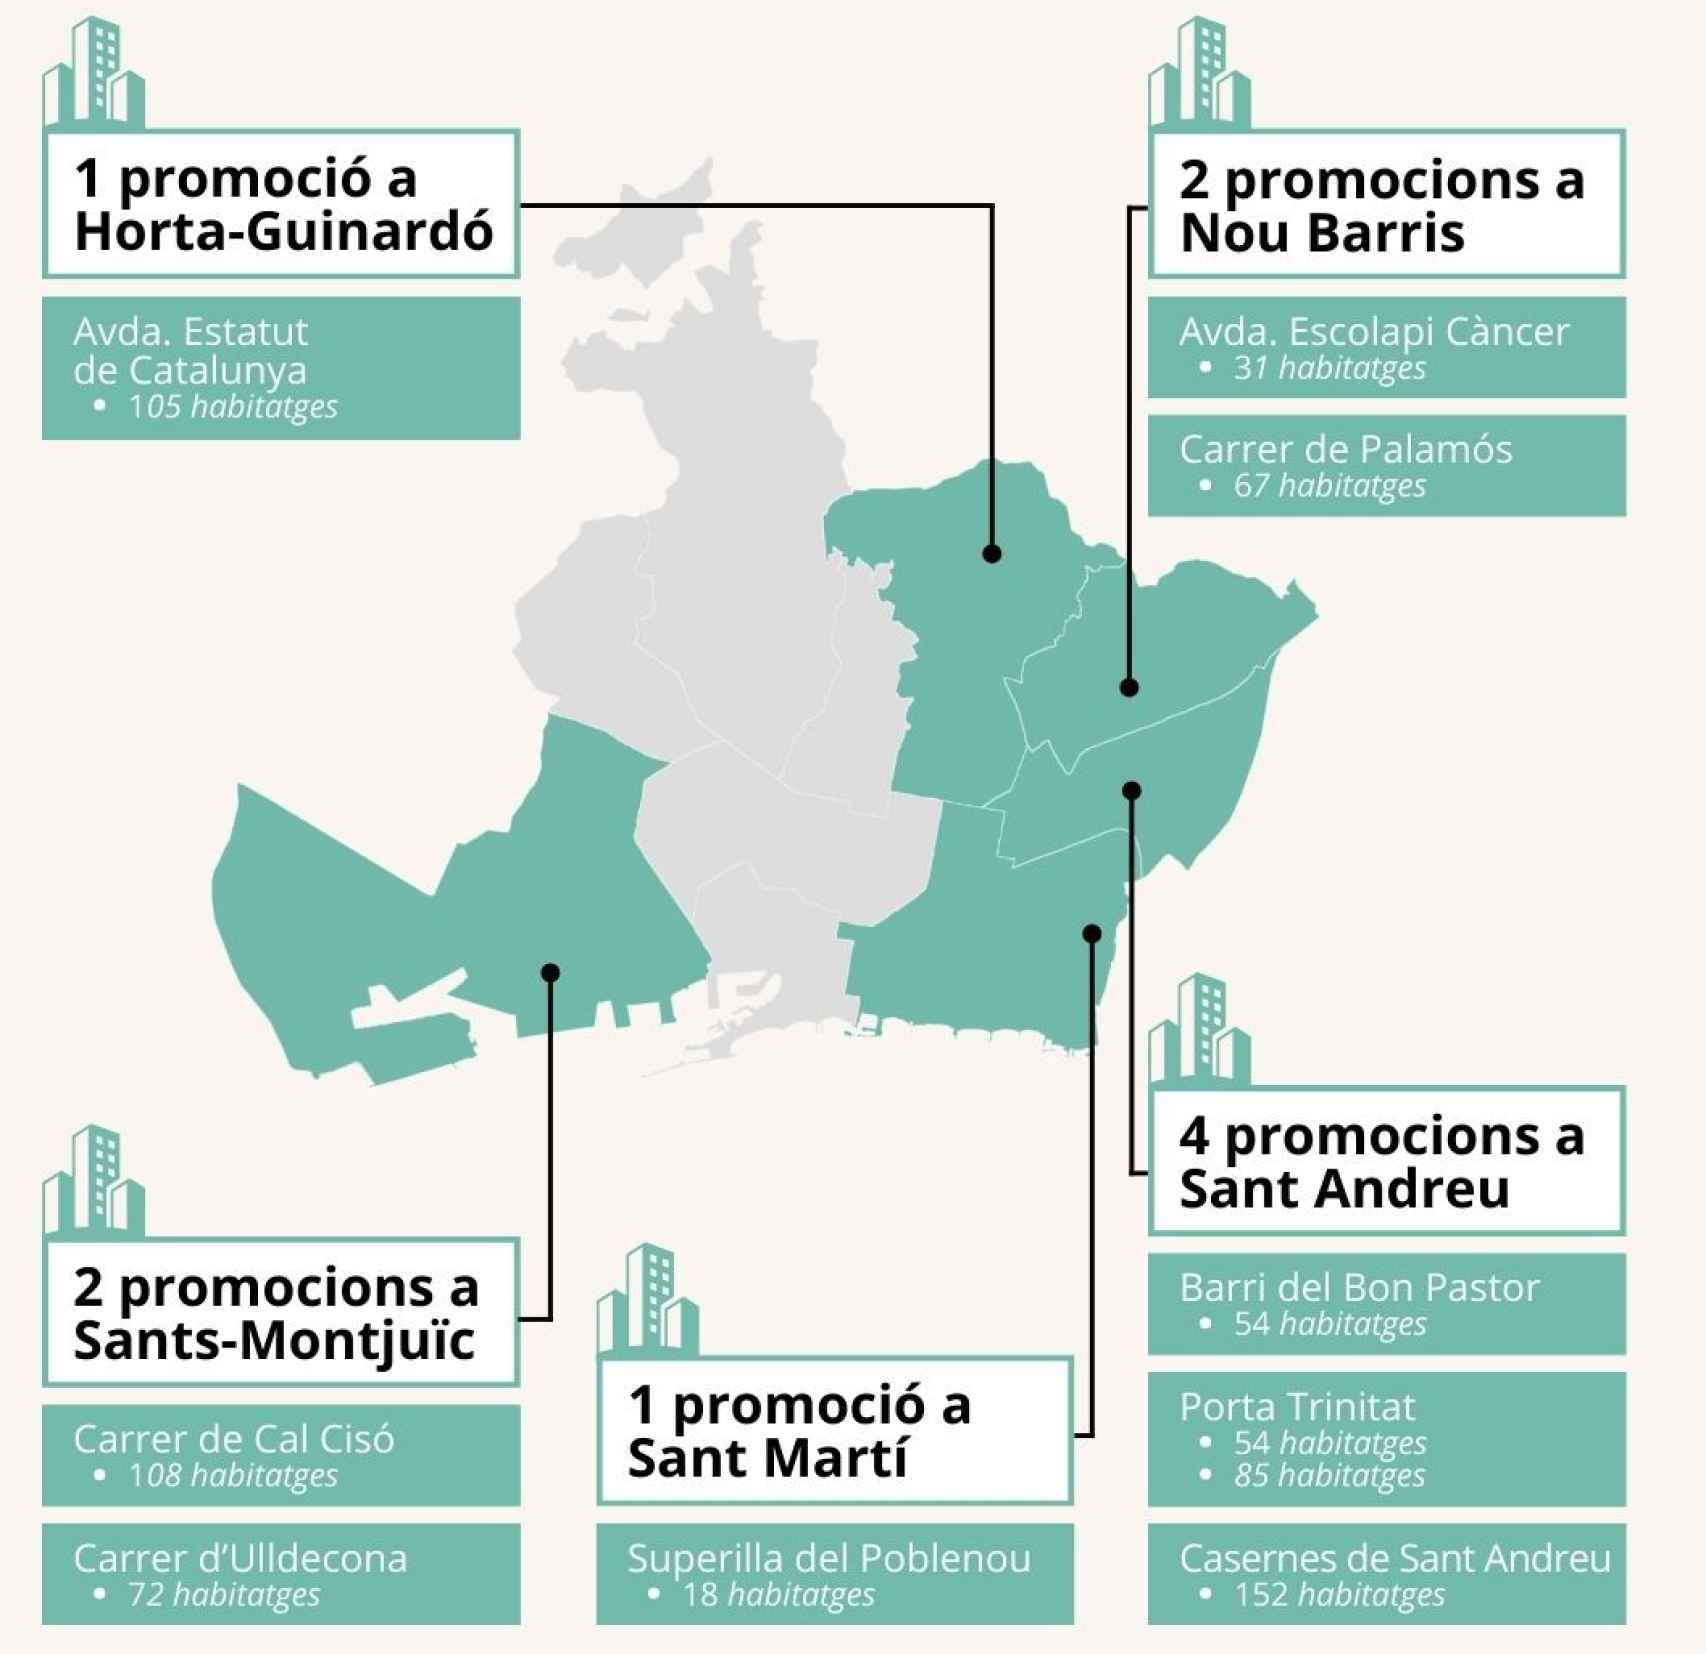 Las 10 nuevas promociones de vivienda en Barcelona